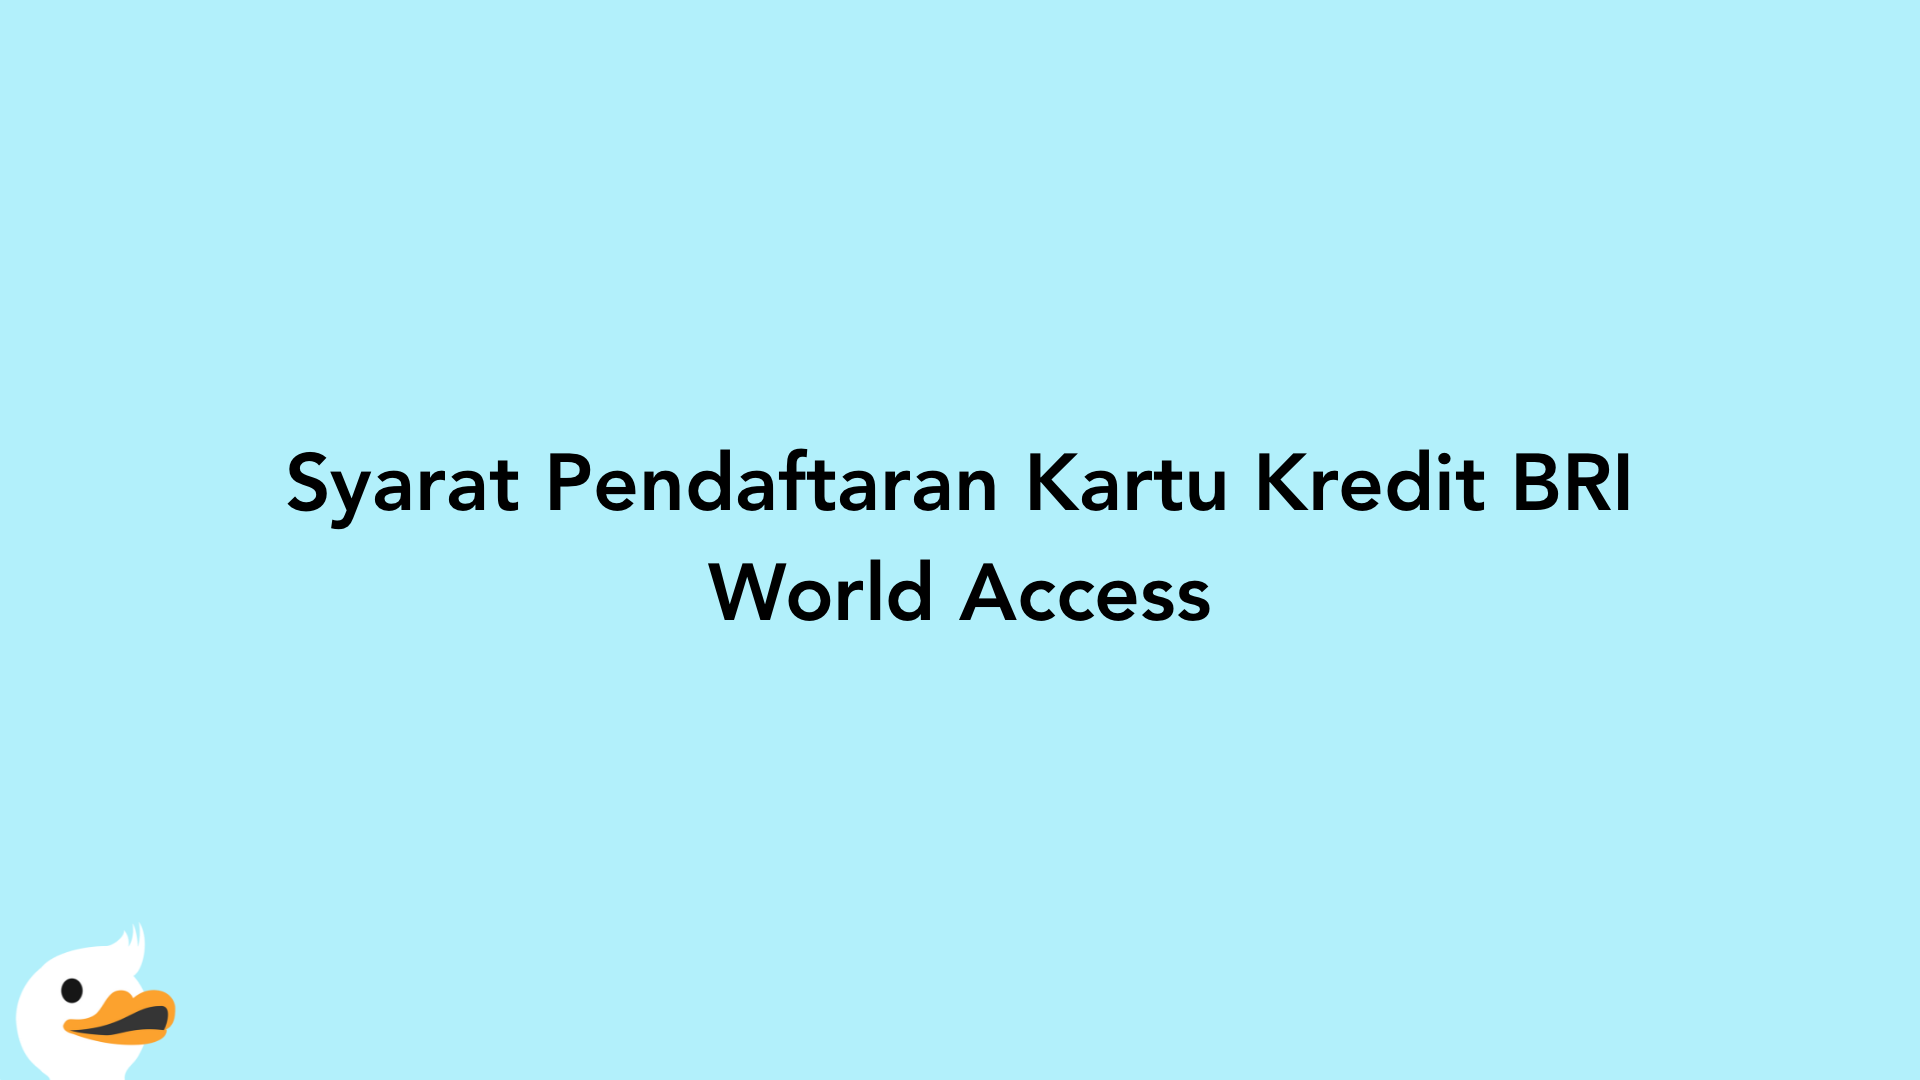 Syarat Pendaftaran Kartu Kredit BRI World Access